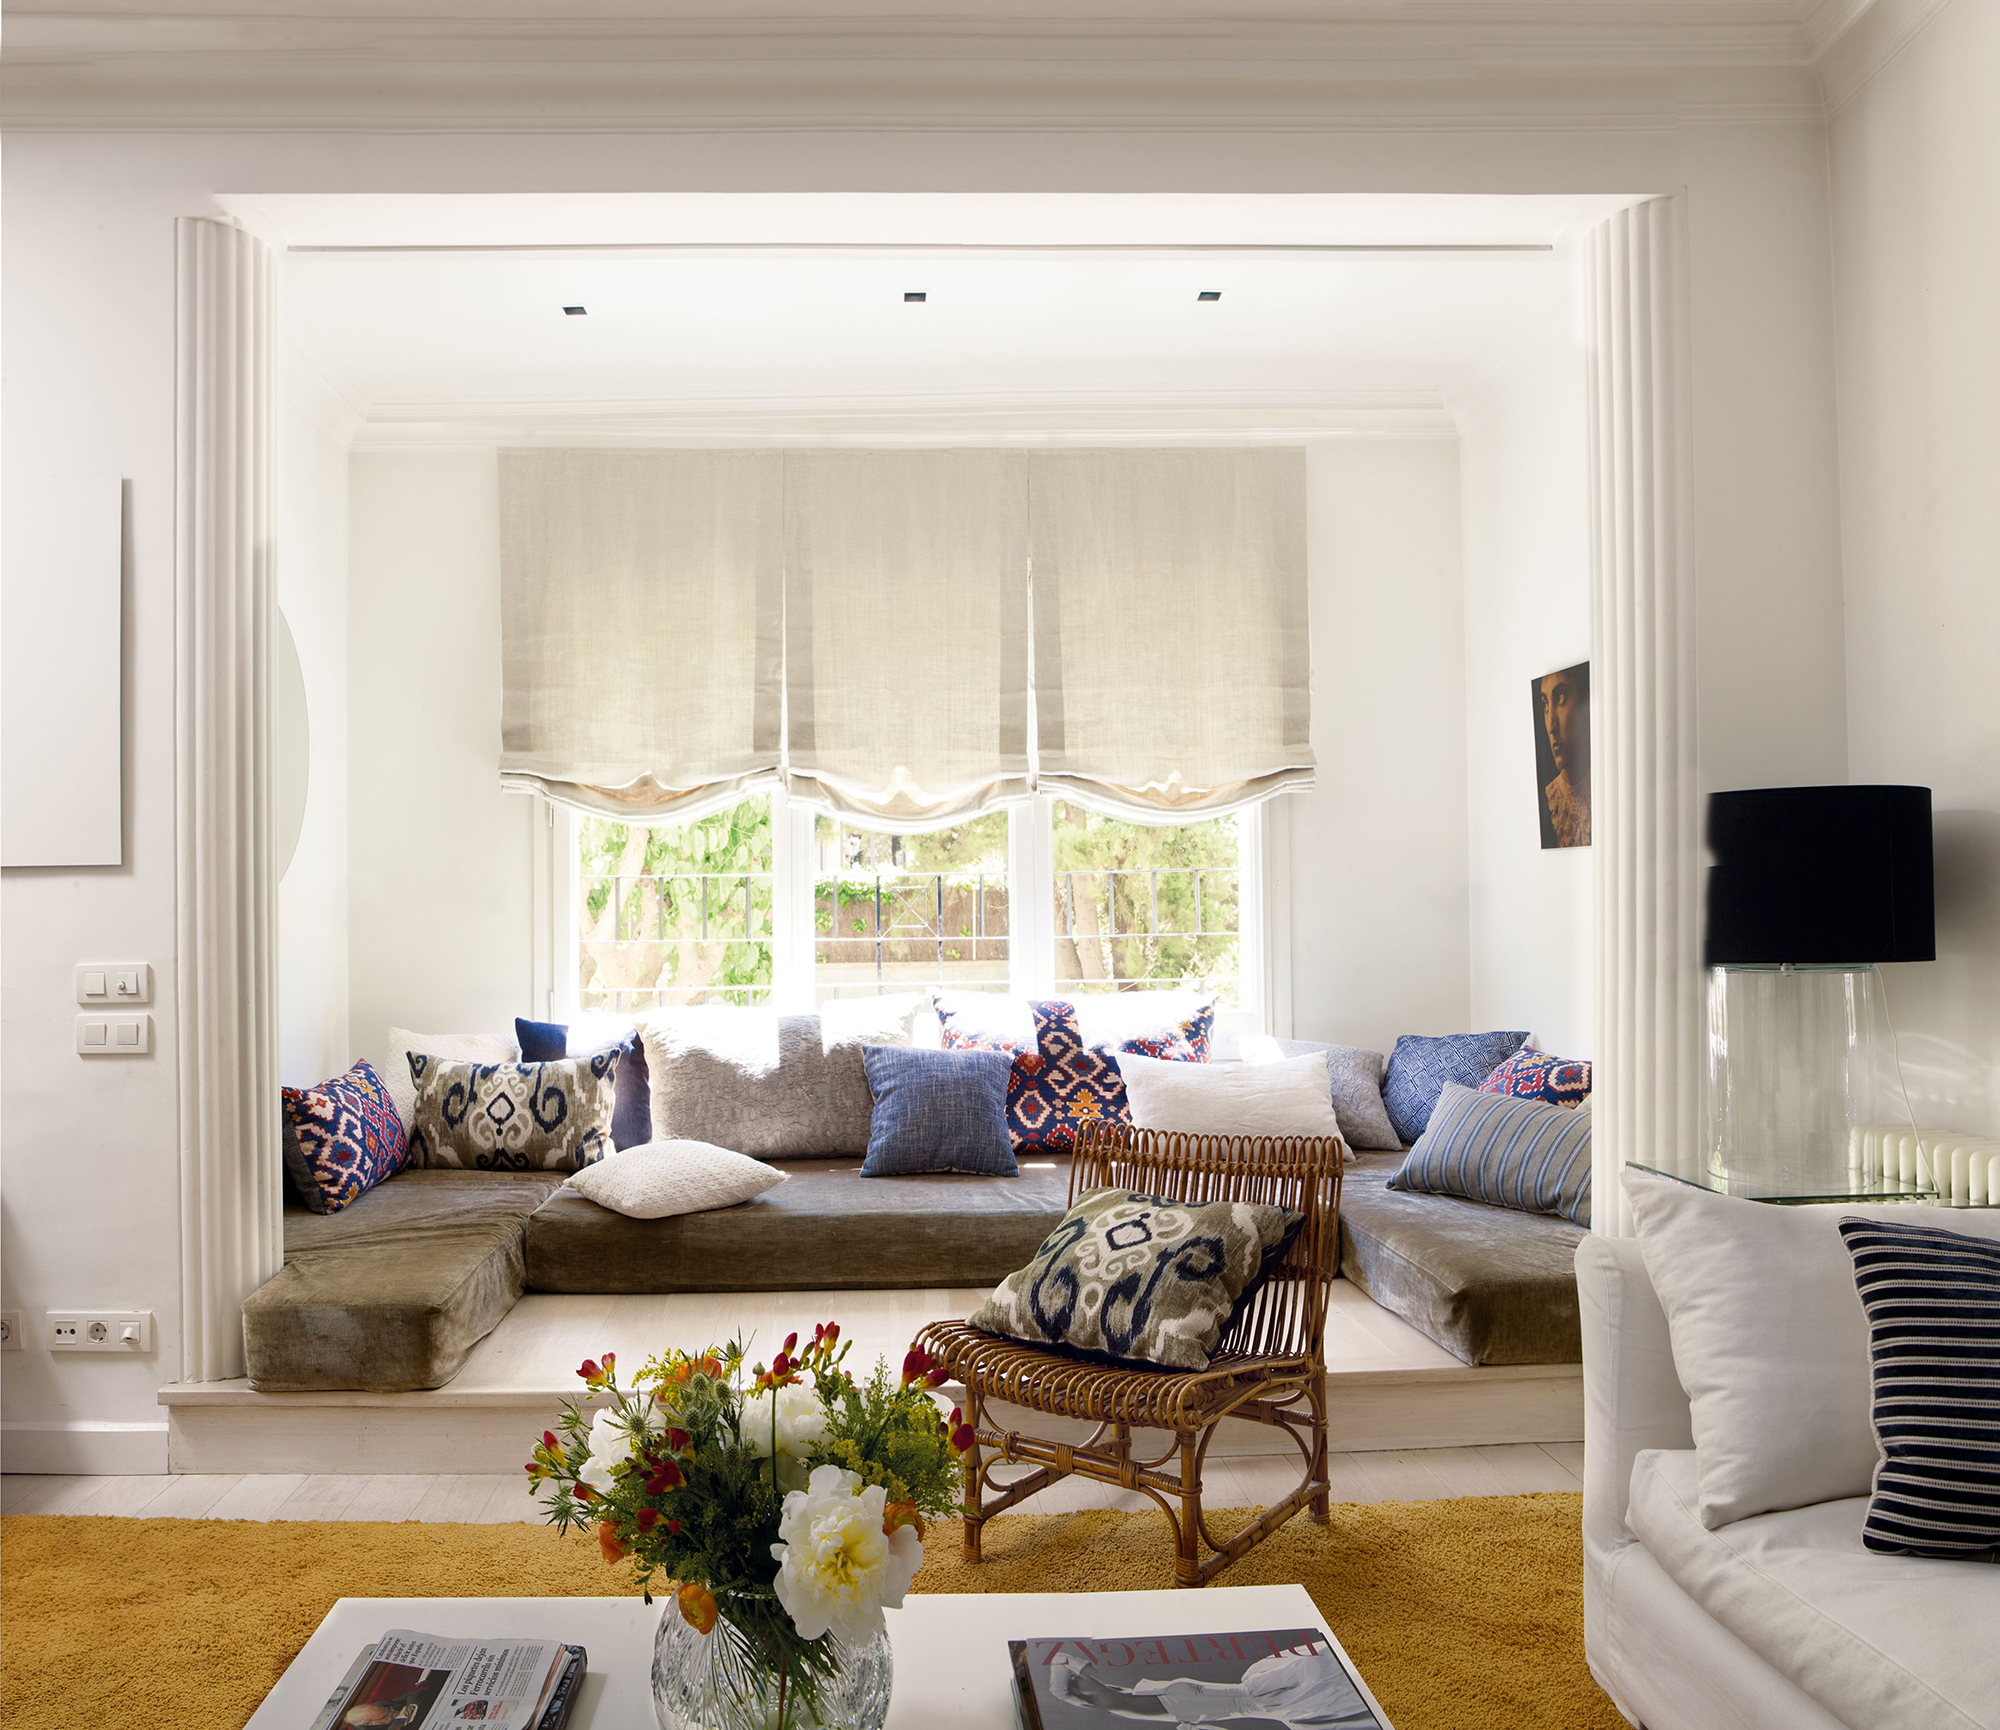 Salón moderno con zona chill out con colchonetas grises en la ventana en forma de L y cojines lilas. 